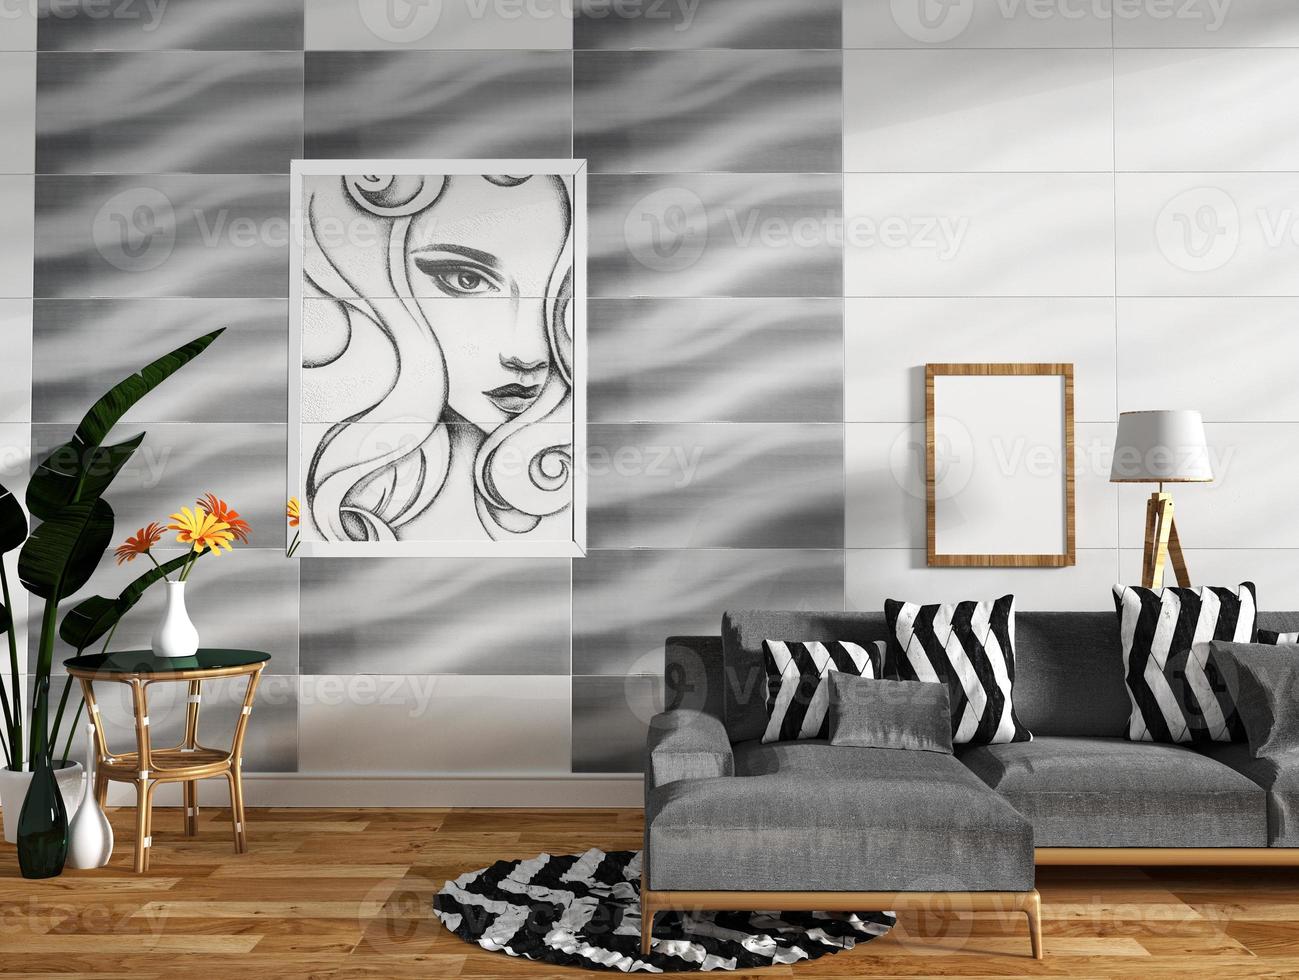 Interior moderno de la sala de estar con decoración de sofás y plantas verdes en el diseño de la pared de azulejos, diseños mínimos, renderizado 3d foto